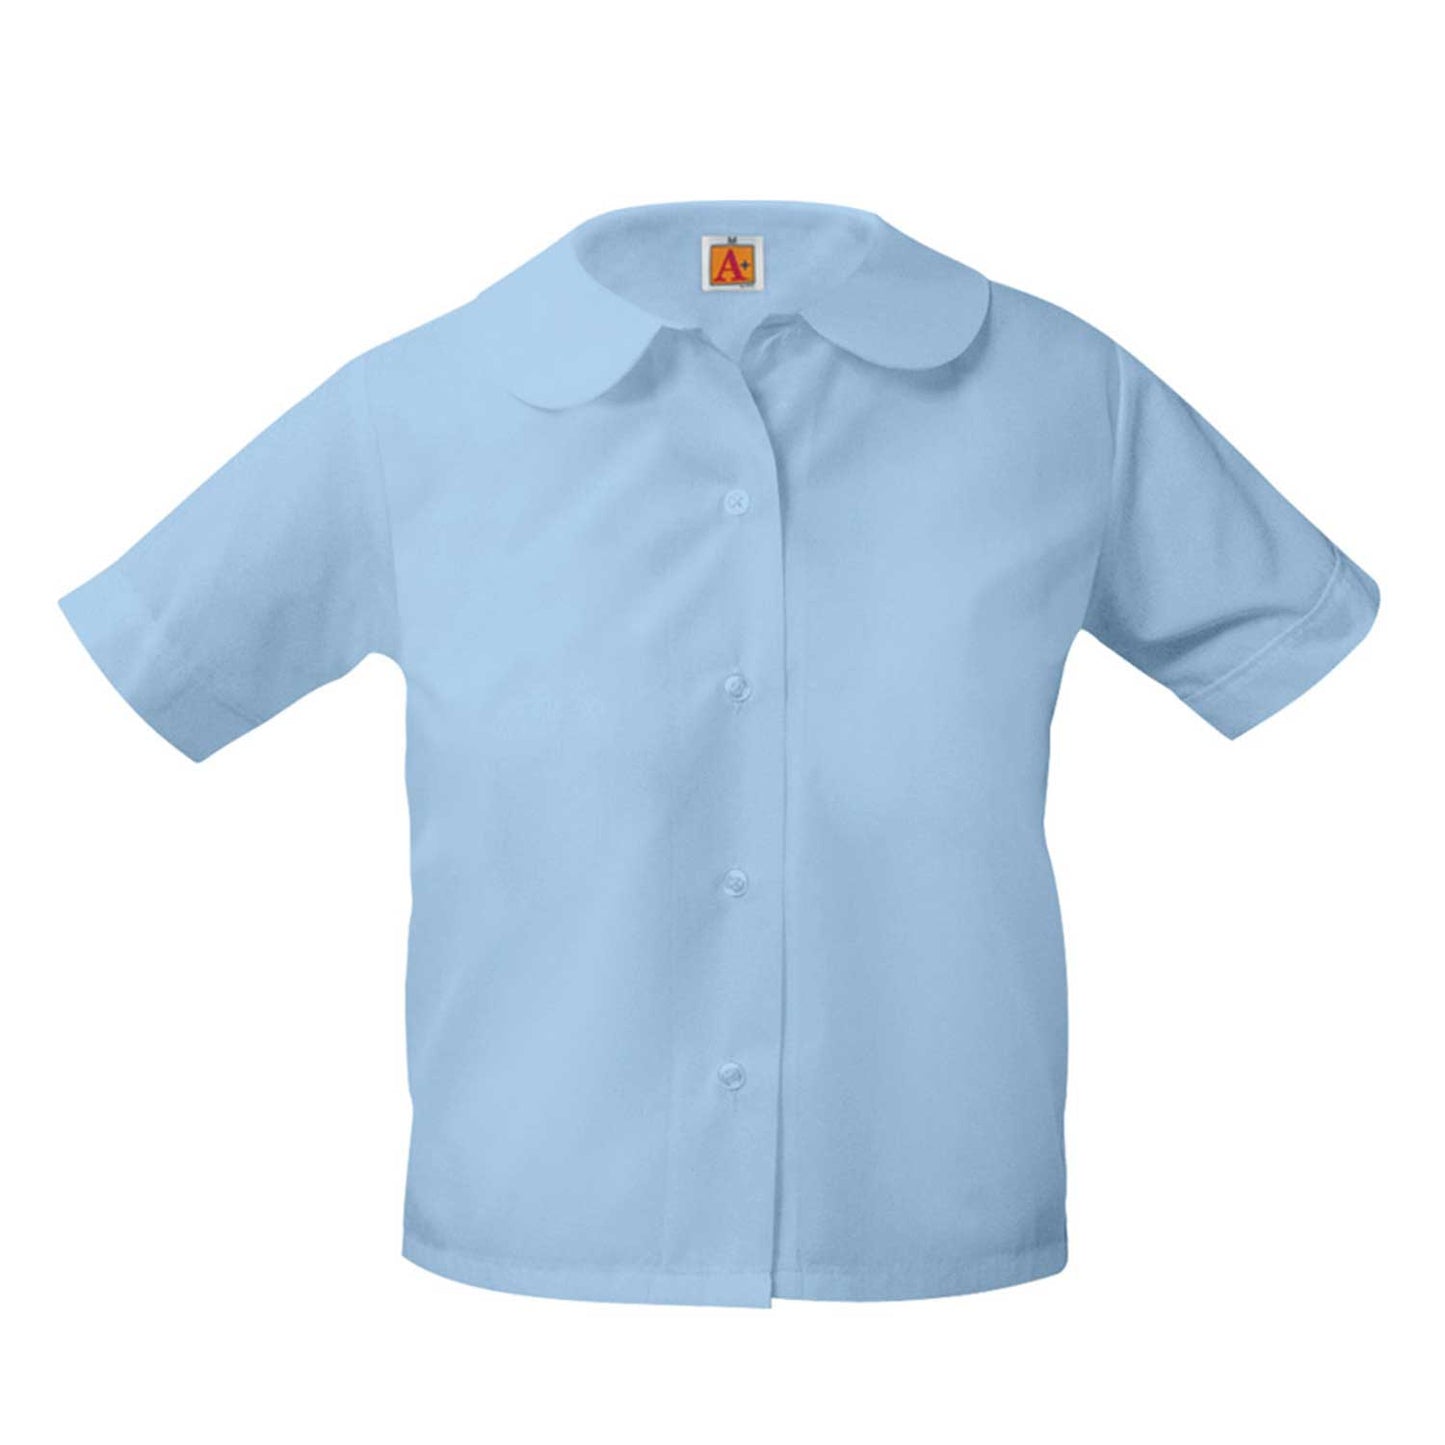 St. James Light Blue Peter Pan Blouse Short Sleeve Shirt (Girls)